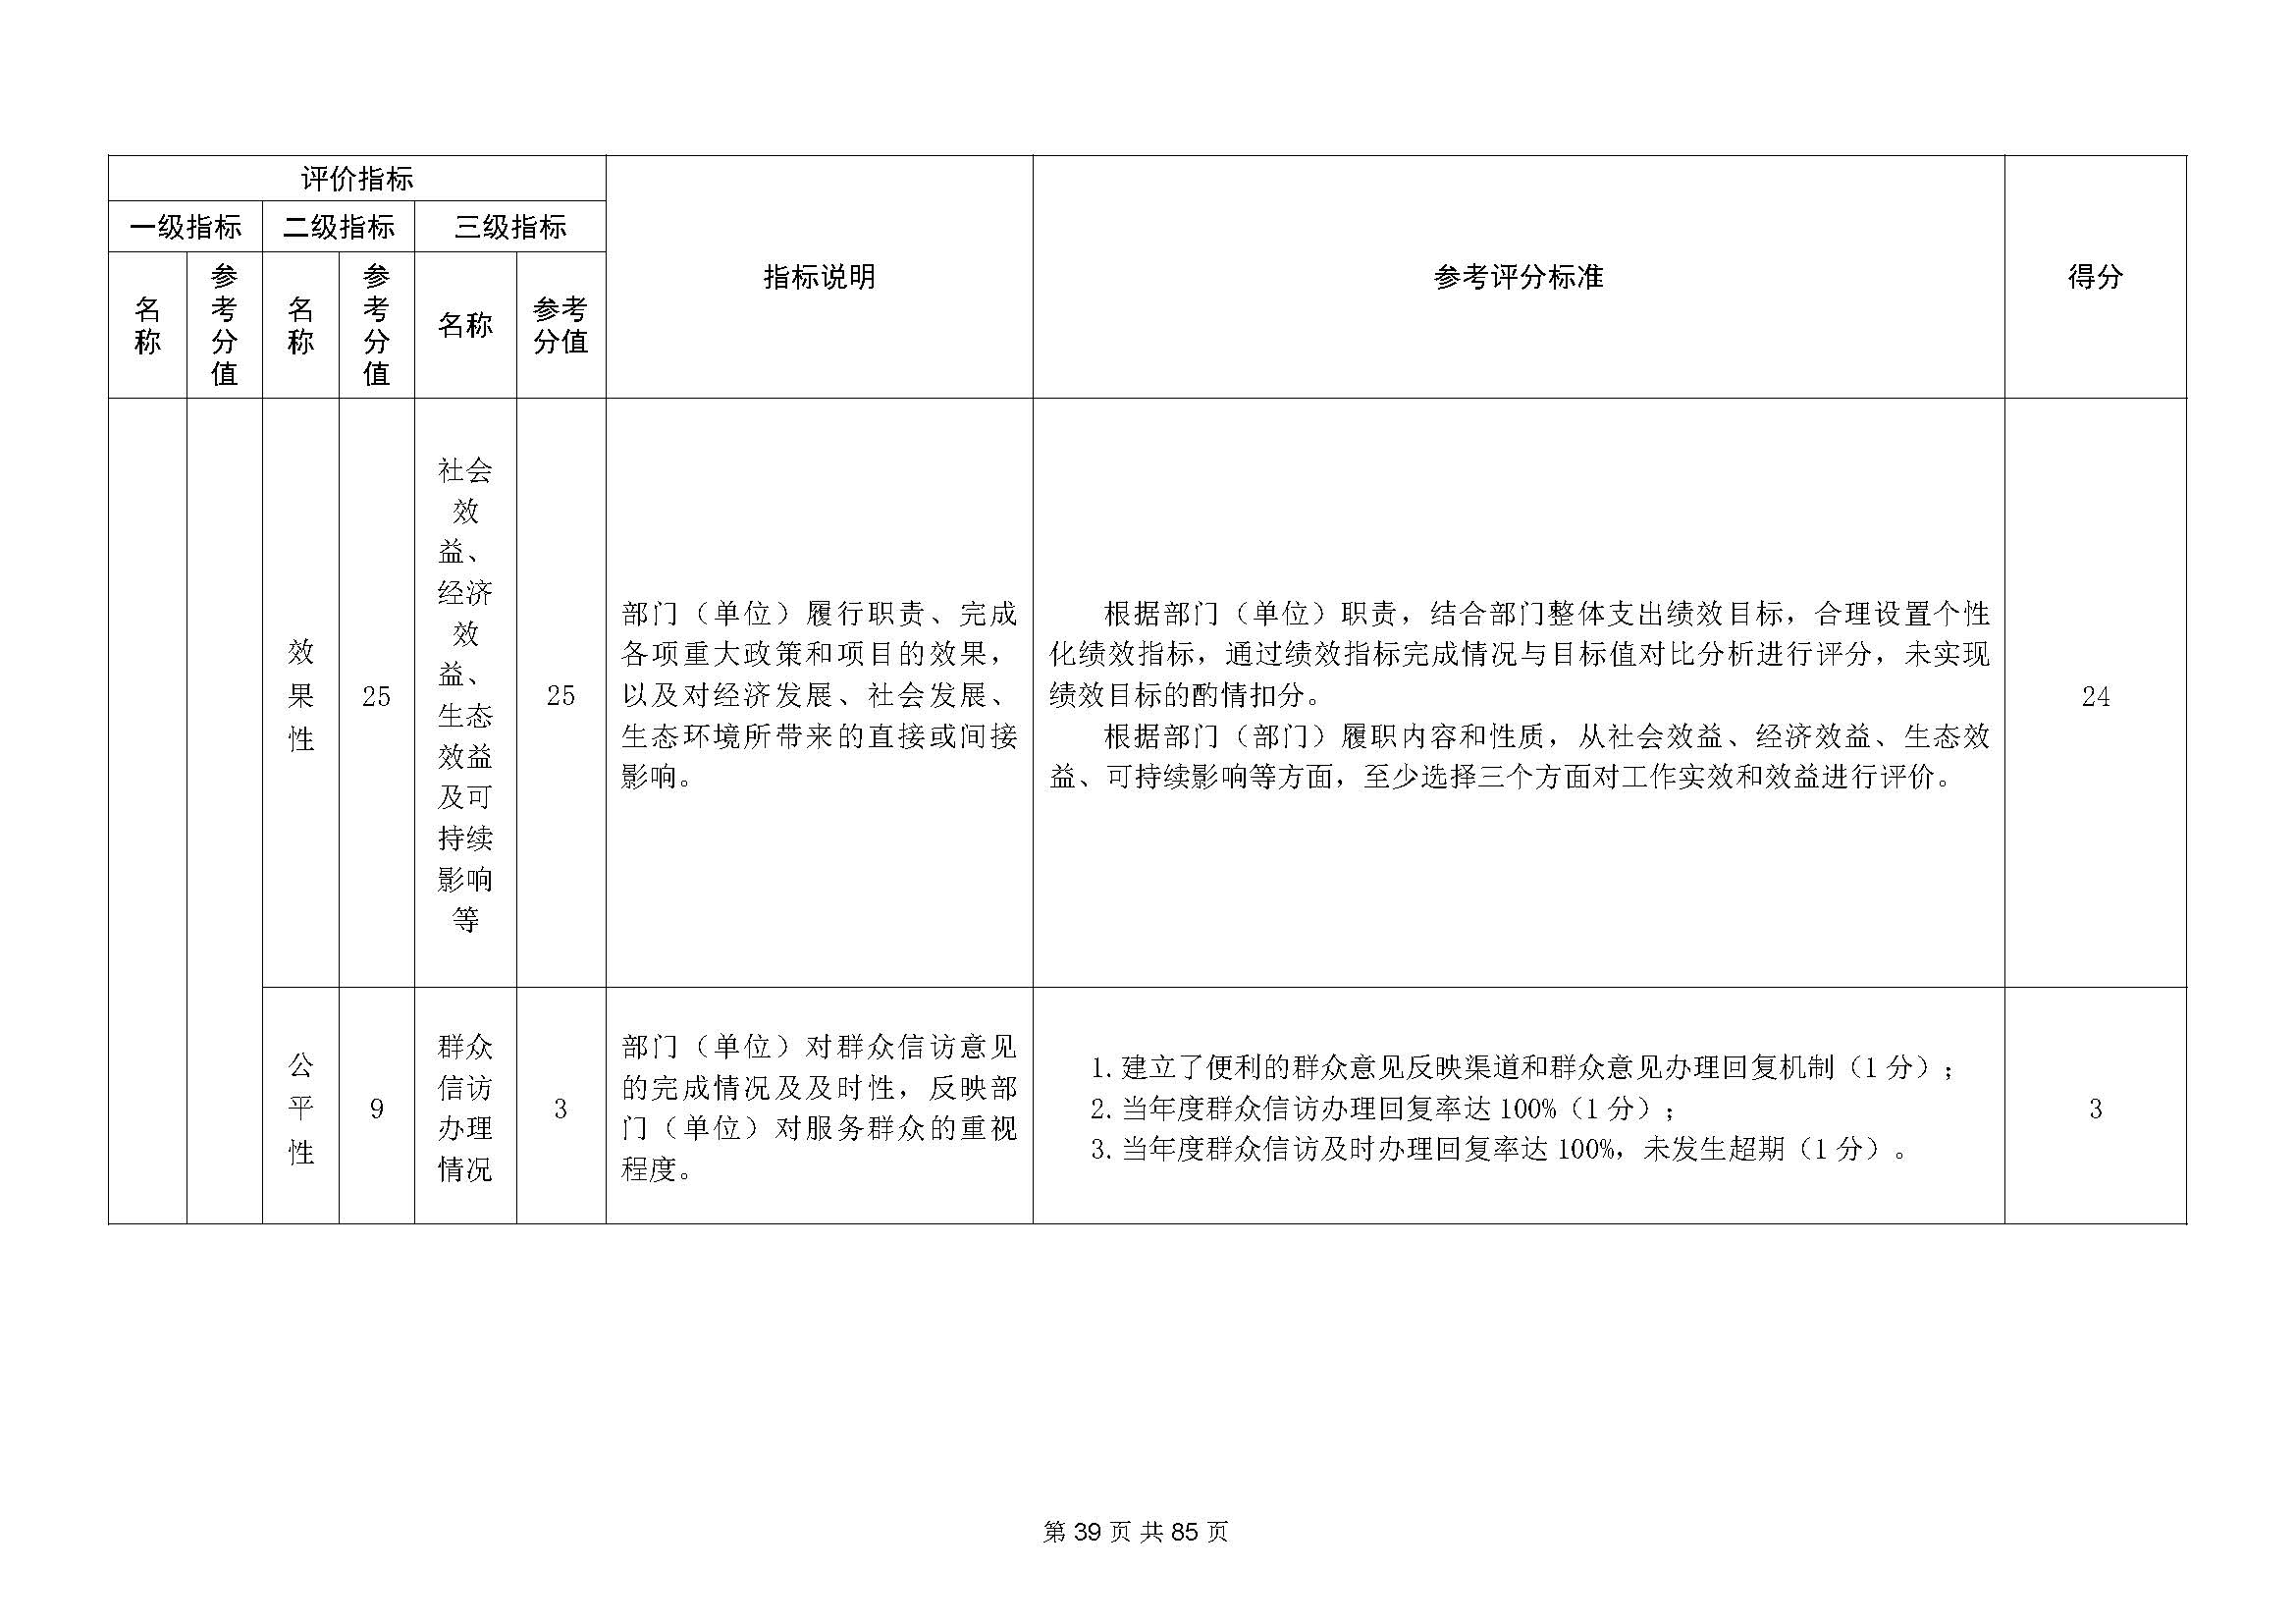 深圳市招生考试办公室2020年度部门决算_页面_40.jpg